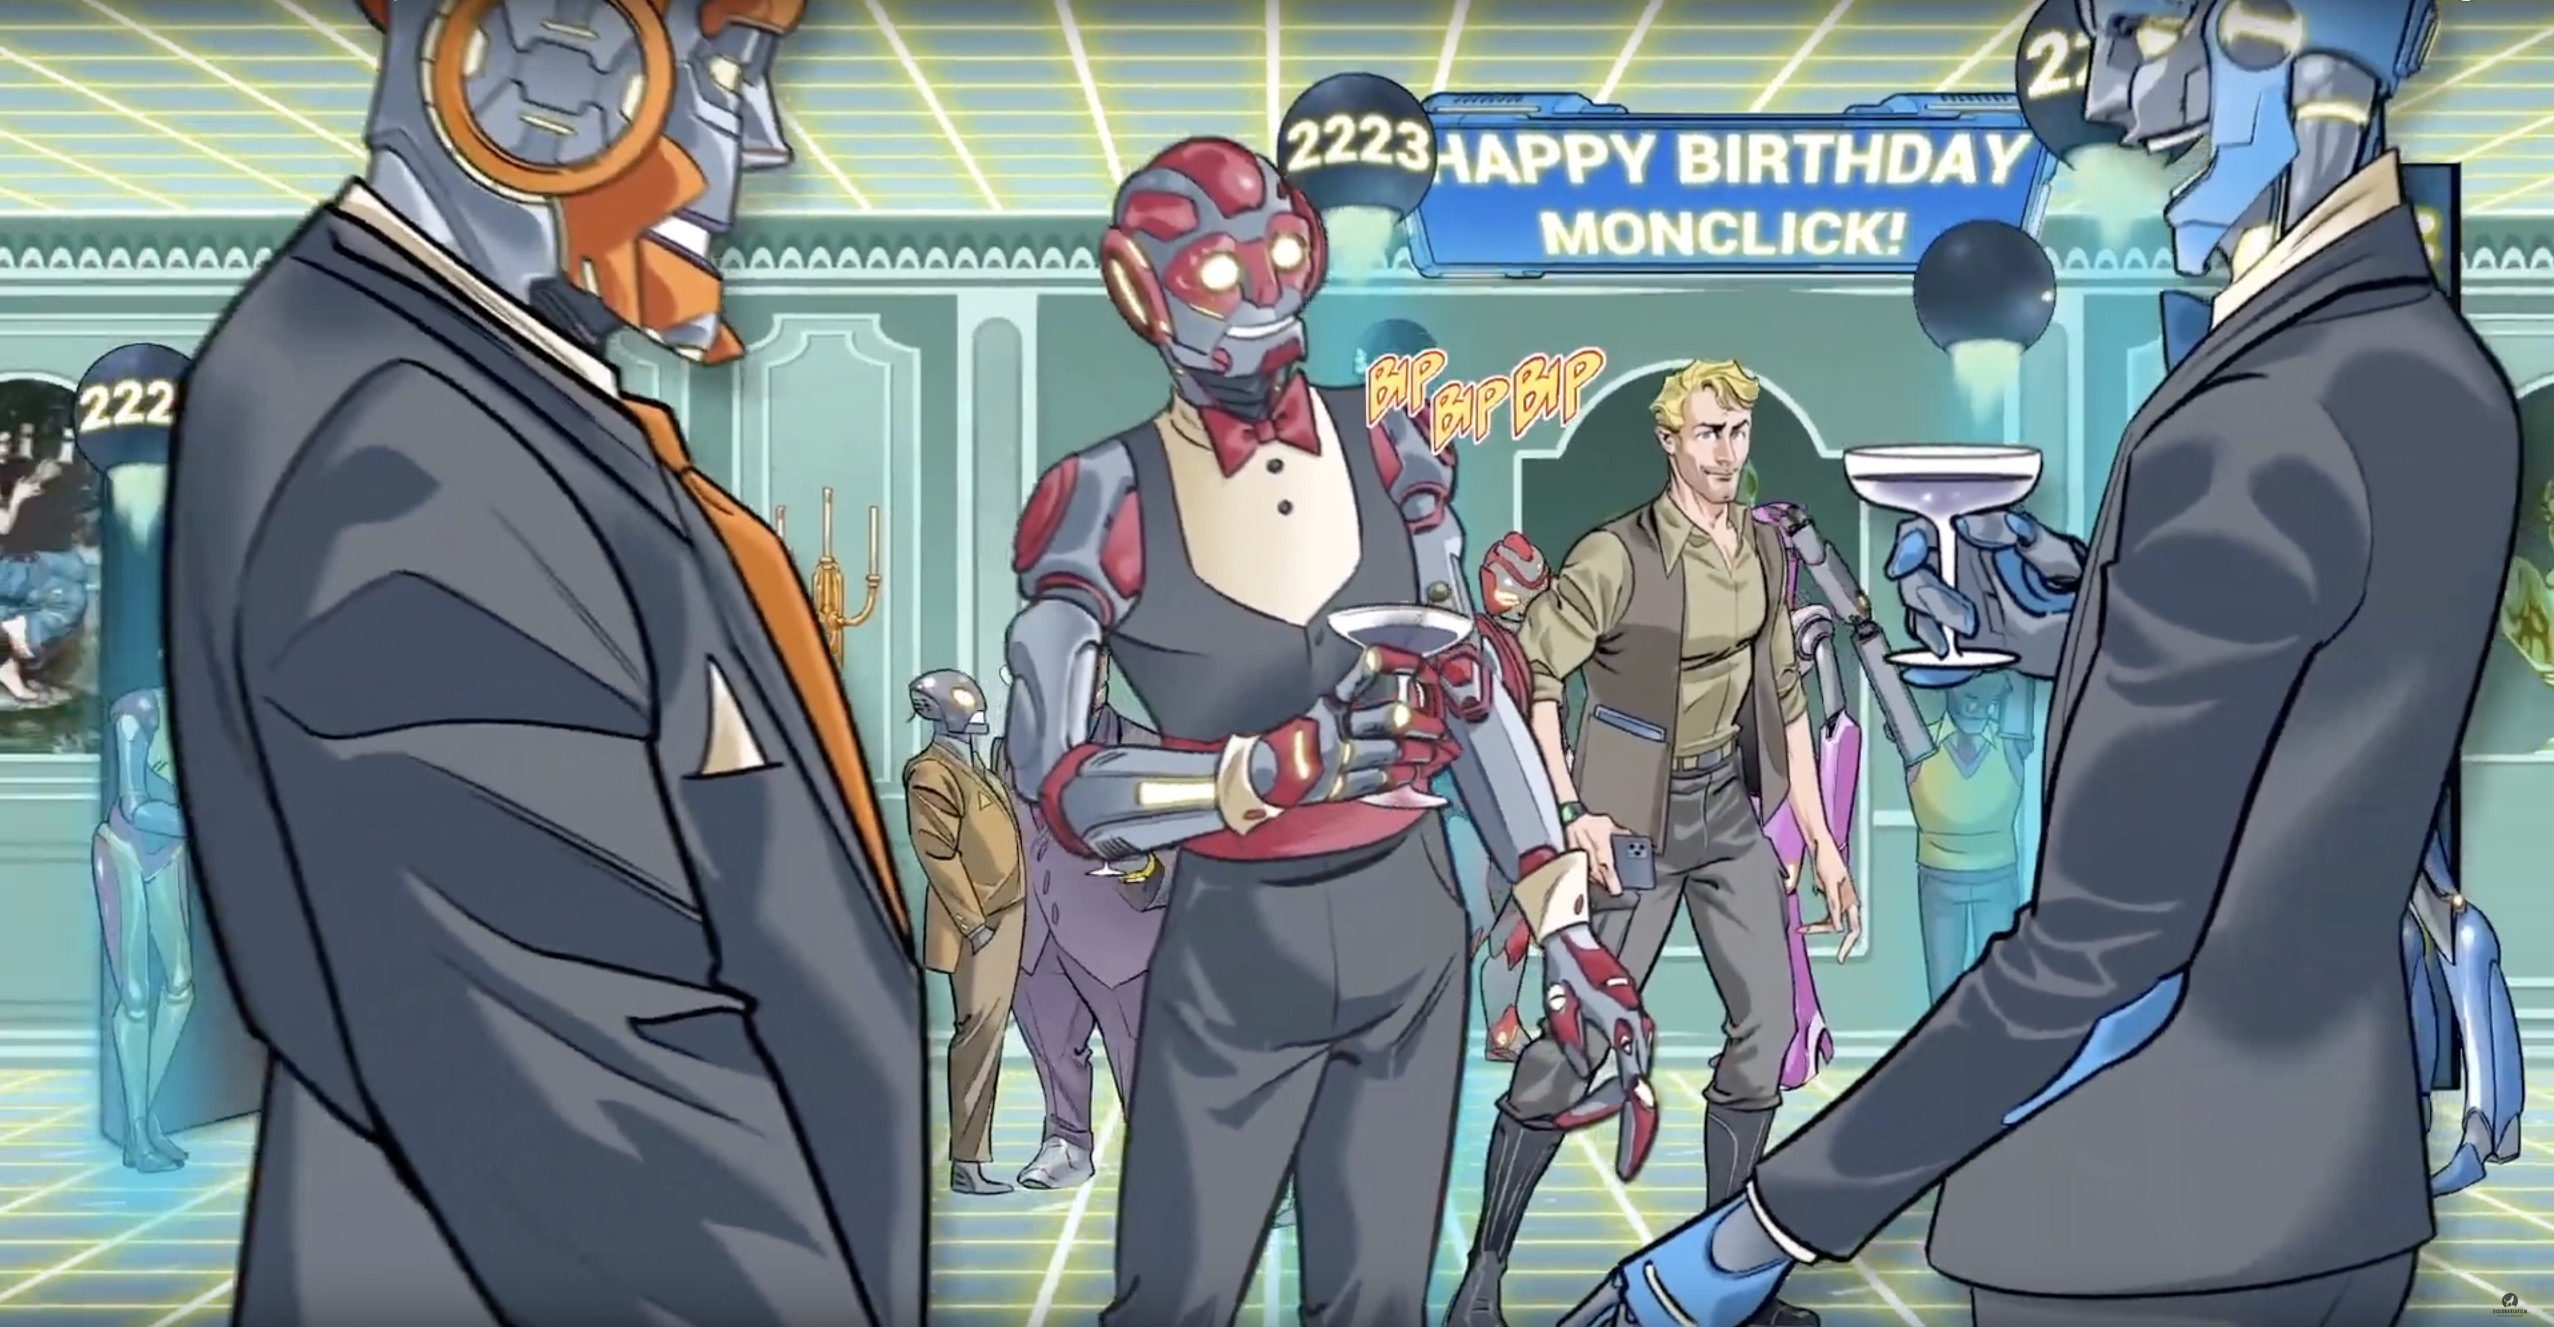 Mr. MC viaggia nel futuro e arriva nel 2223 per festeggiare il compleanno di Monclick ma i festeggiamenti saranno interrotti dall'intrusione di Hackerton